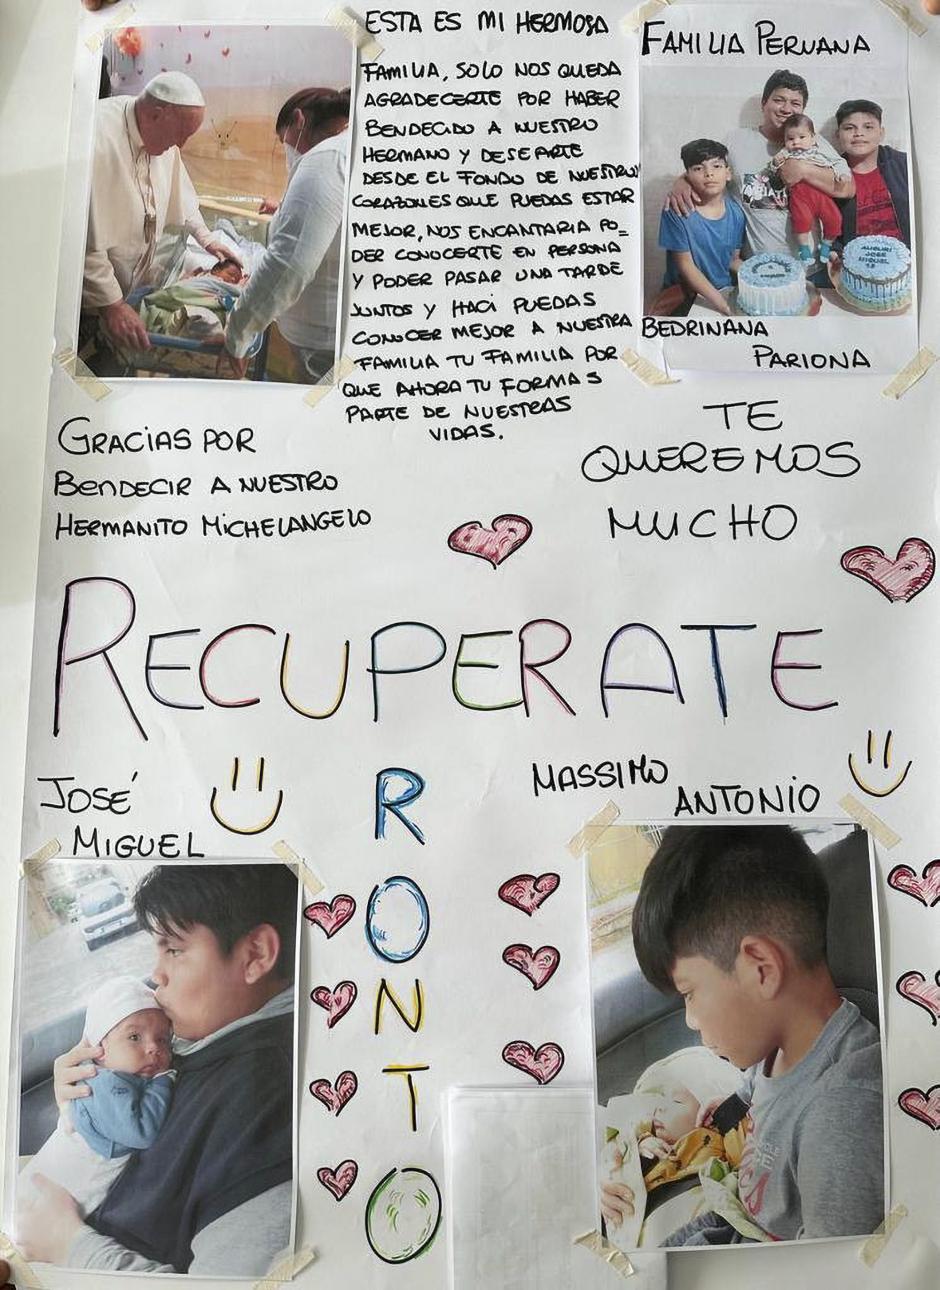 etalle del mensaje de ánimo que una familia peruana ha enviado al papa Francisco con motivo de su hospitalización